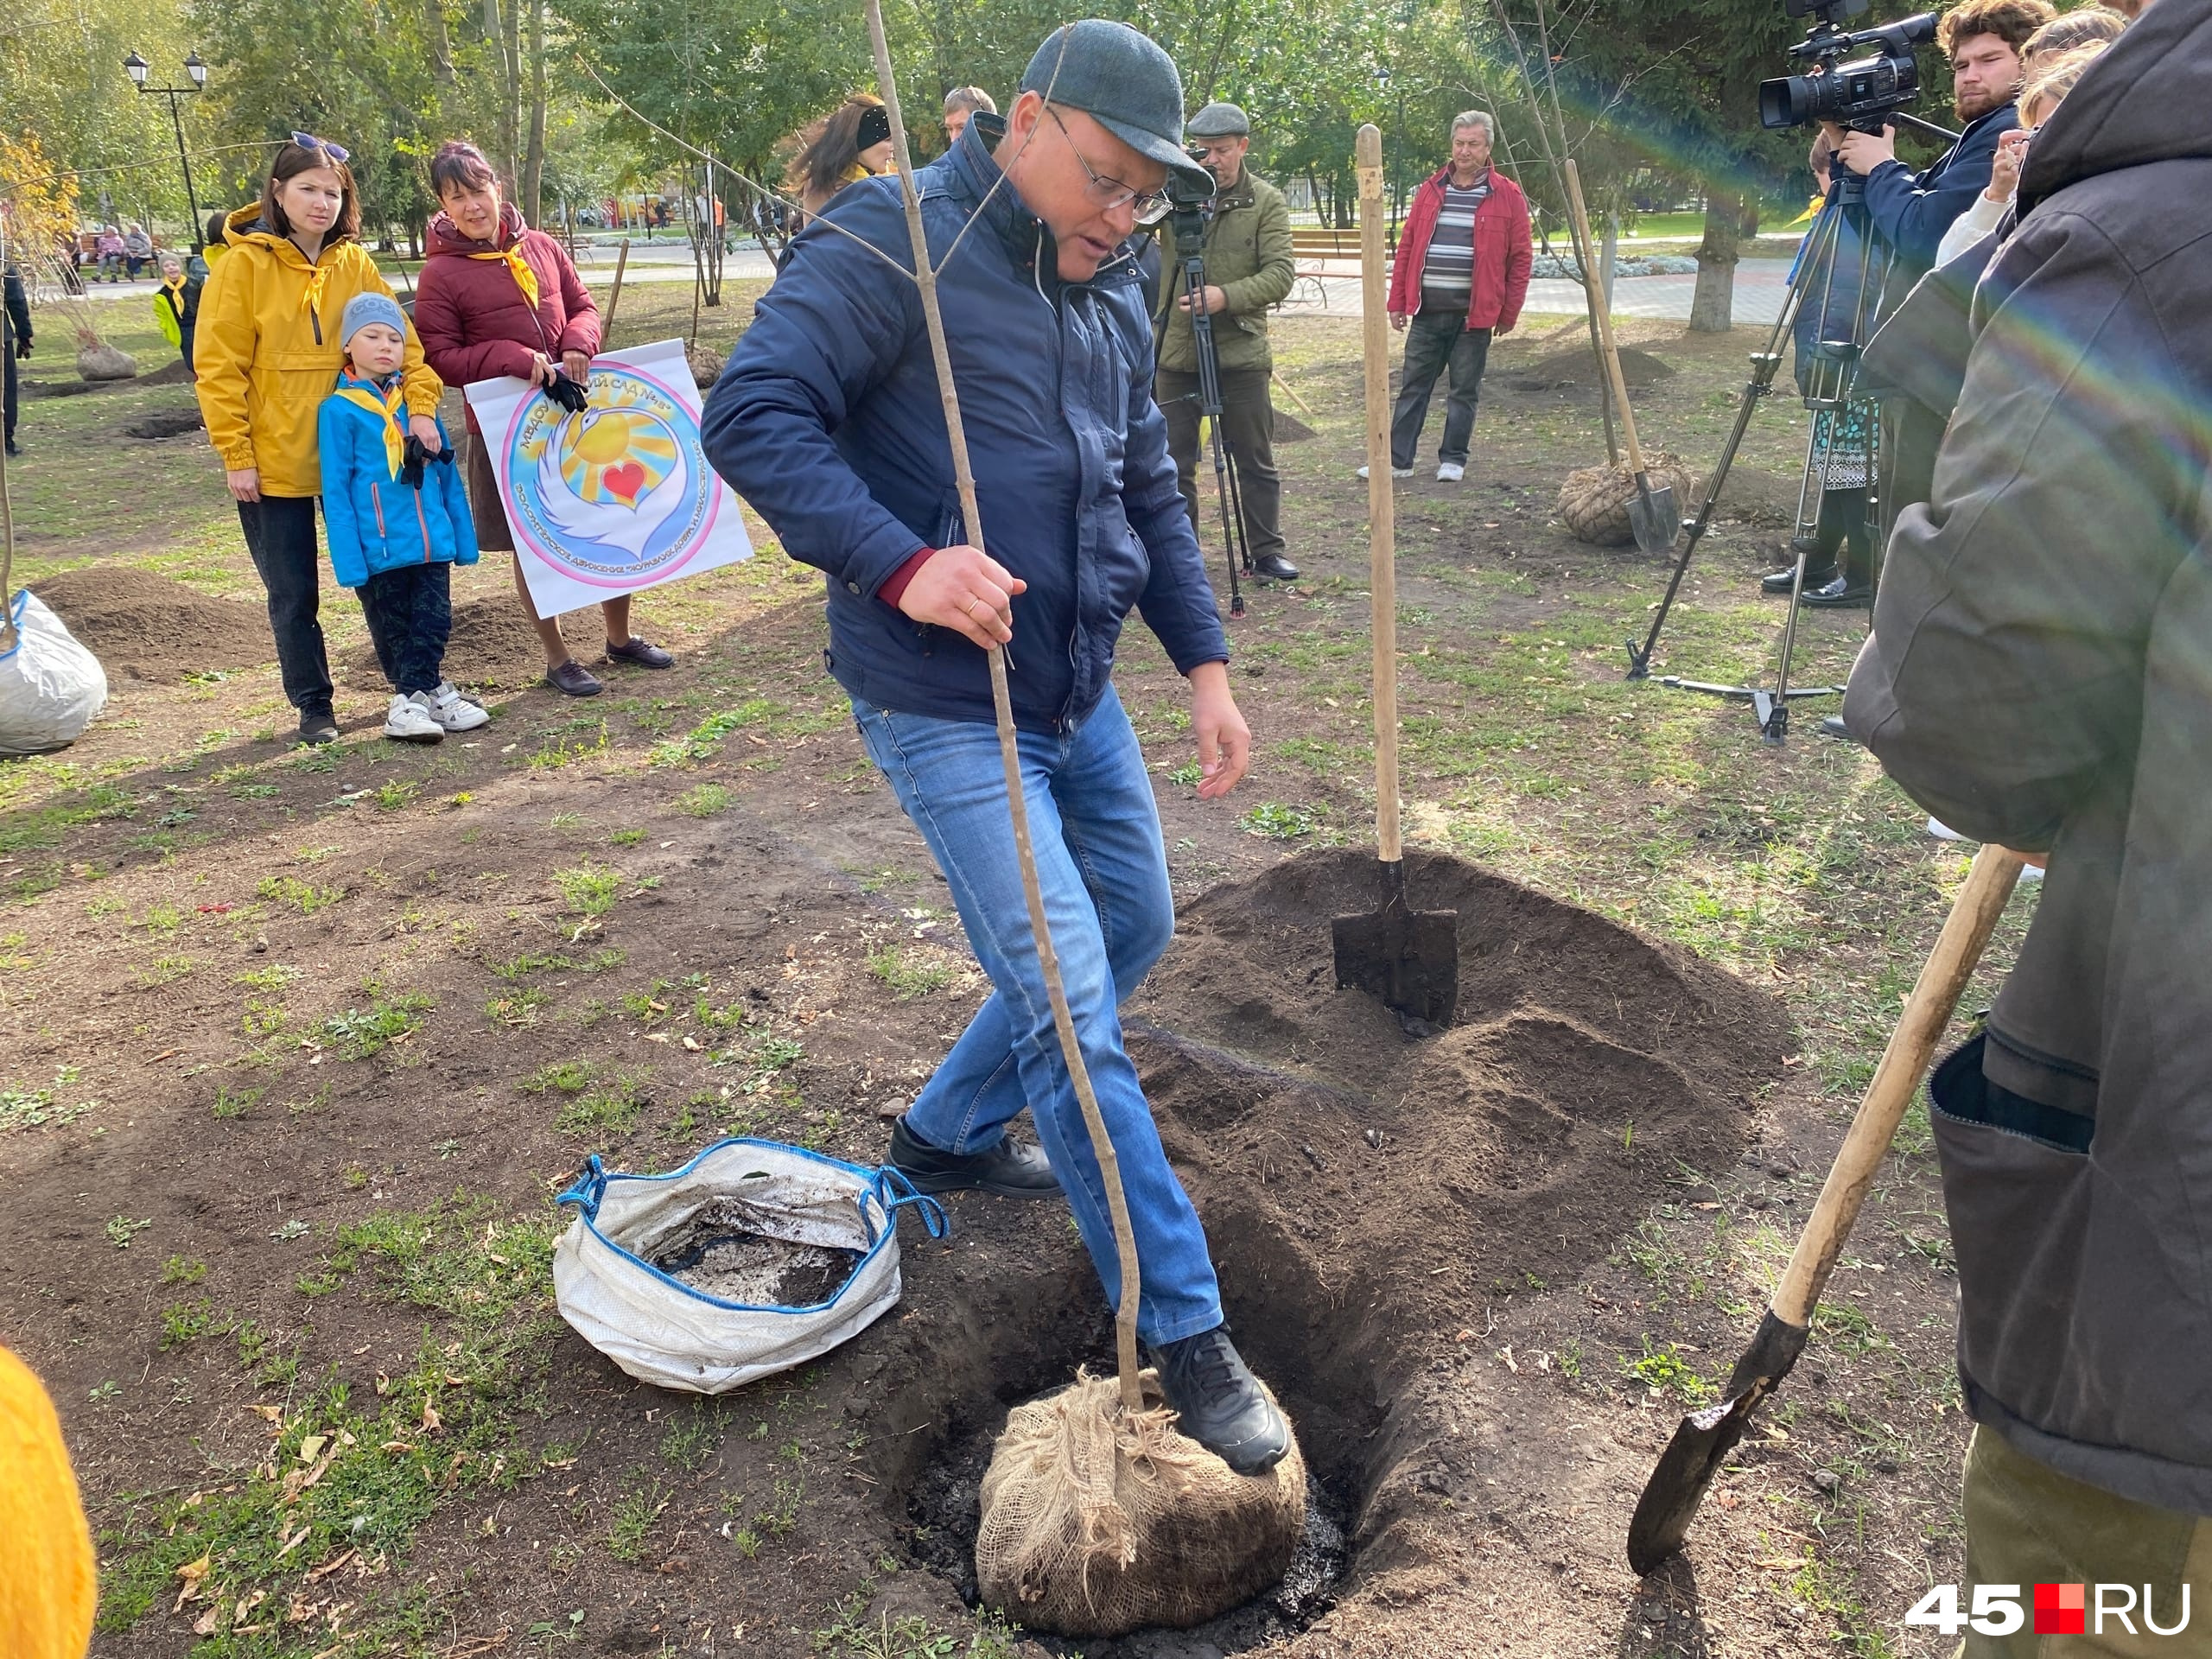 Анатолий Тарасенко показал, как нужно сажать деревья, чтобы они прижились